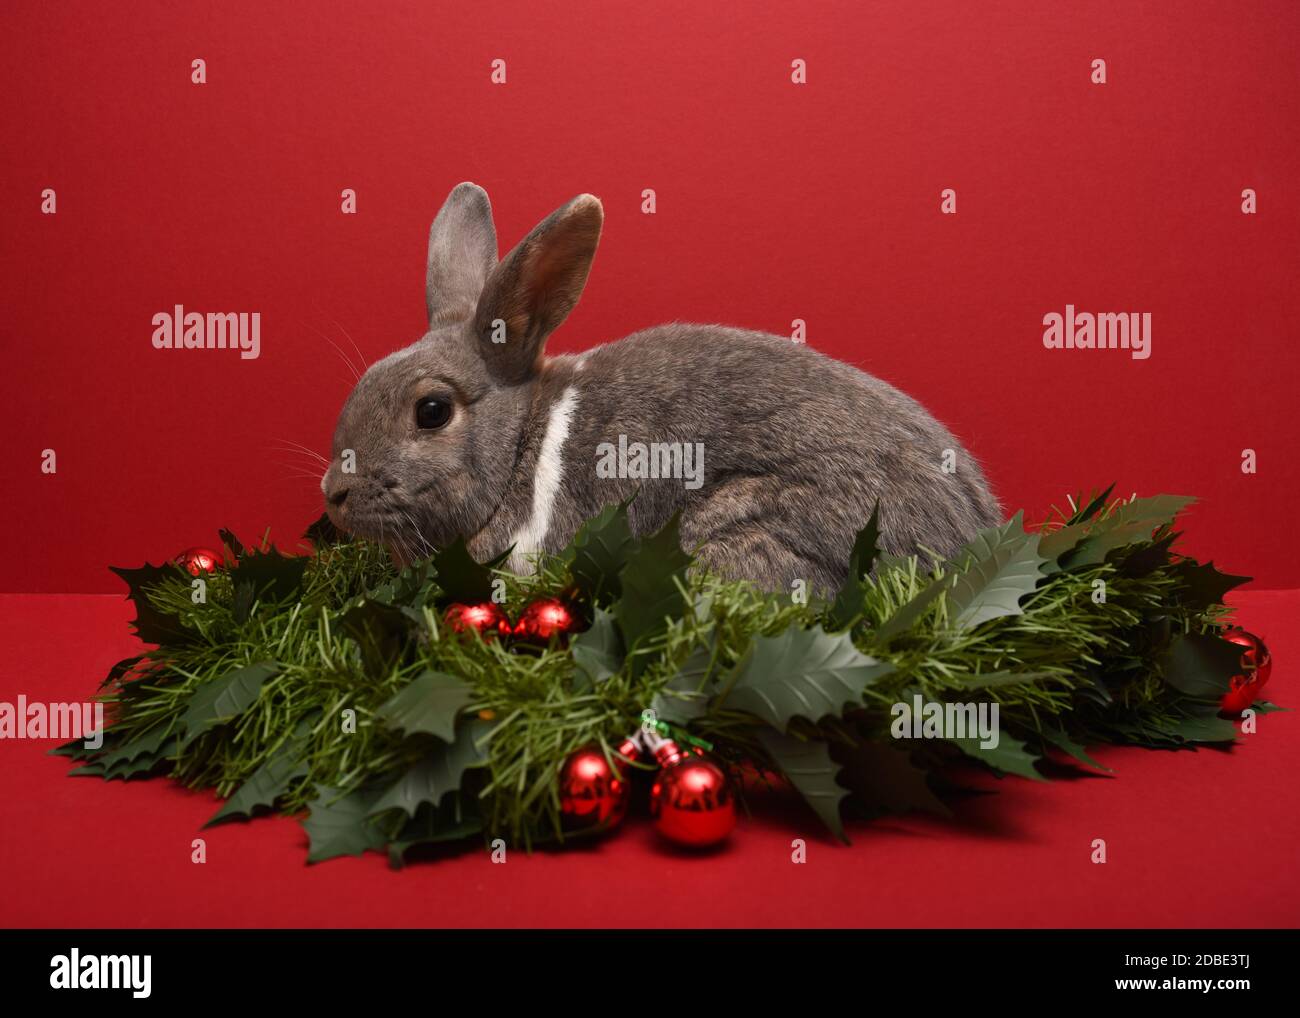 Fotografía de un conejo en una guirnalda de Navidad Foto de stock